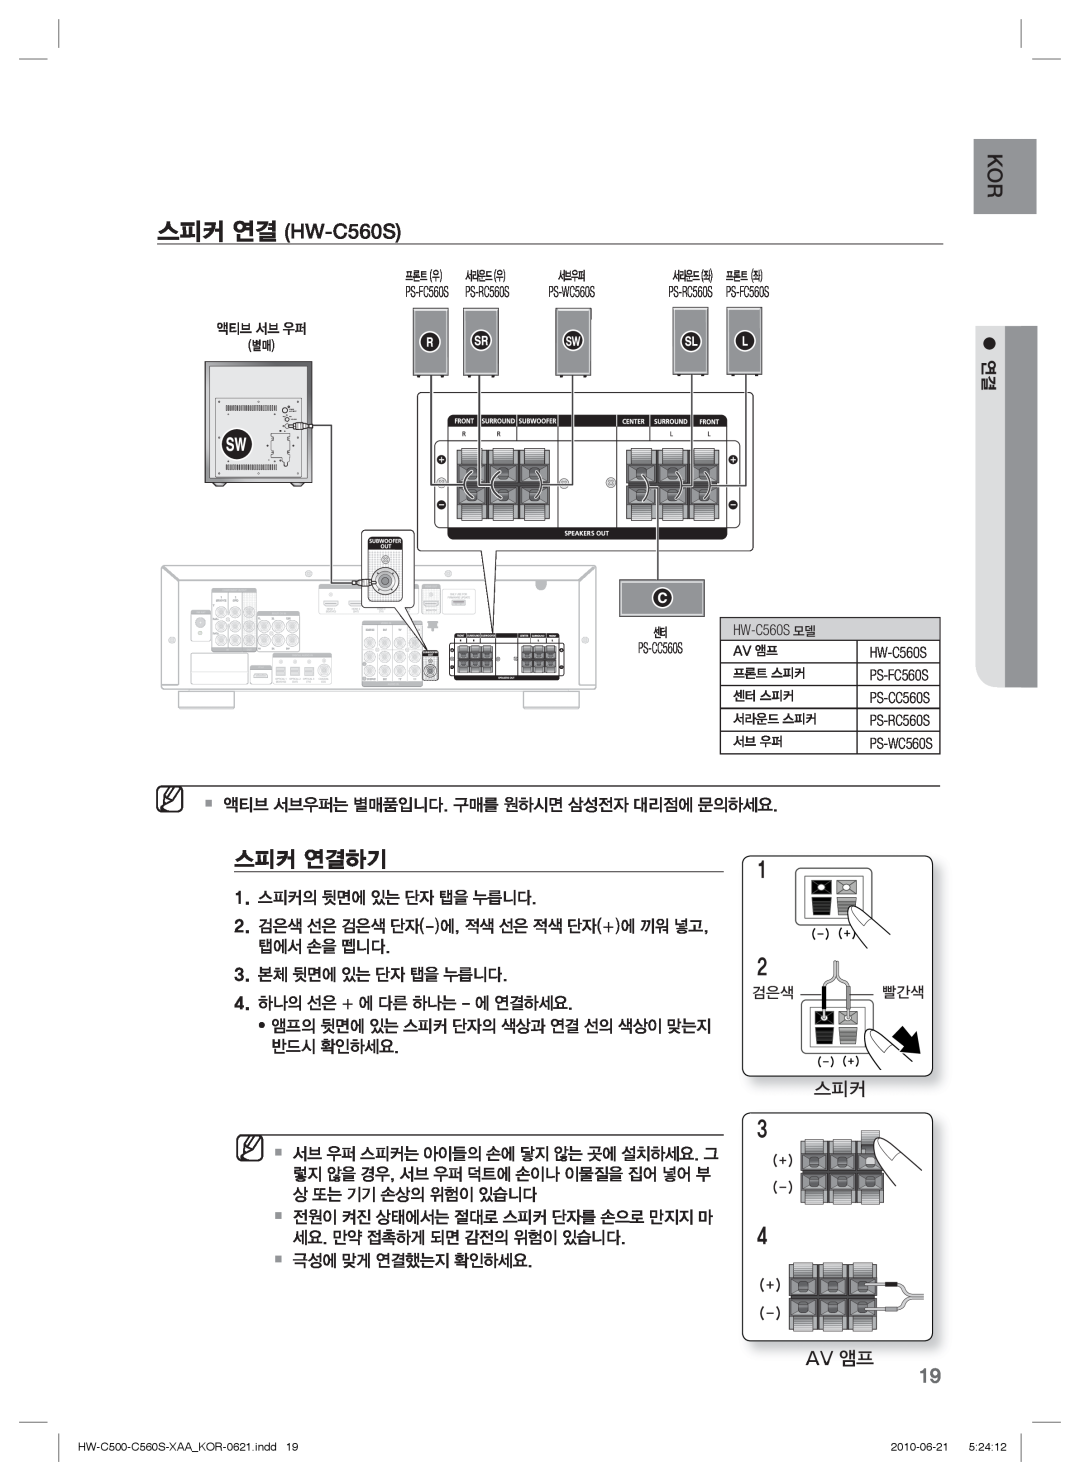 Samsung manual KOR 스피커 연결 HW-C560S, Av 앰프, 스피커 연결하기 